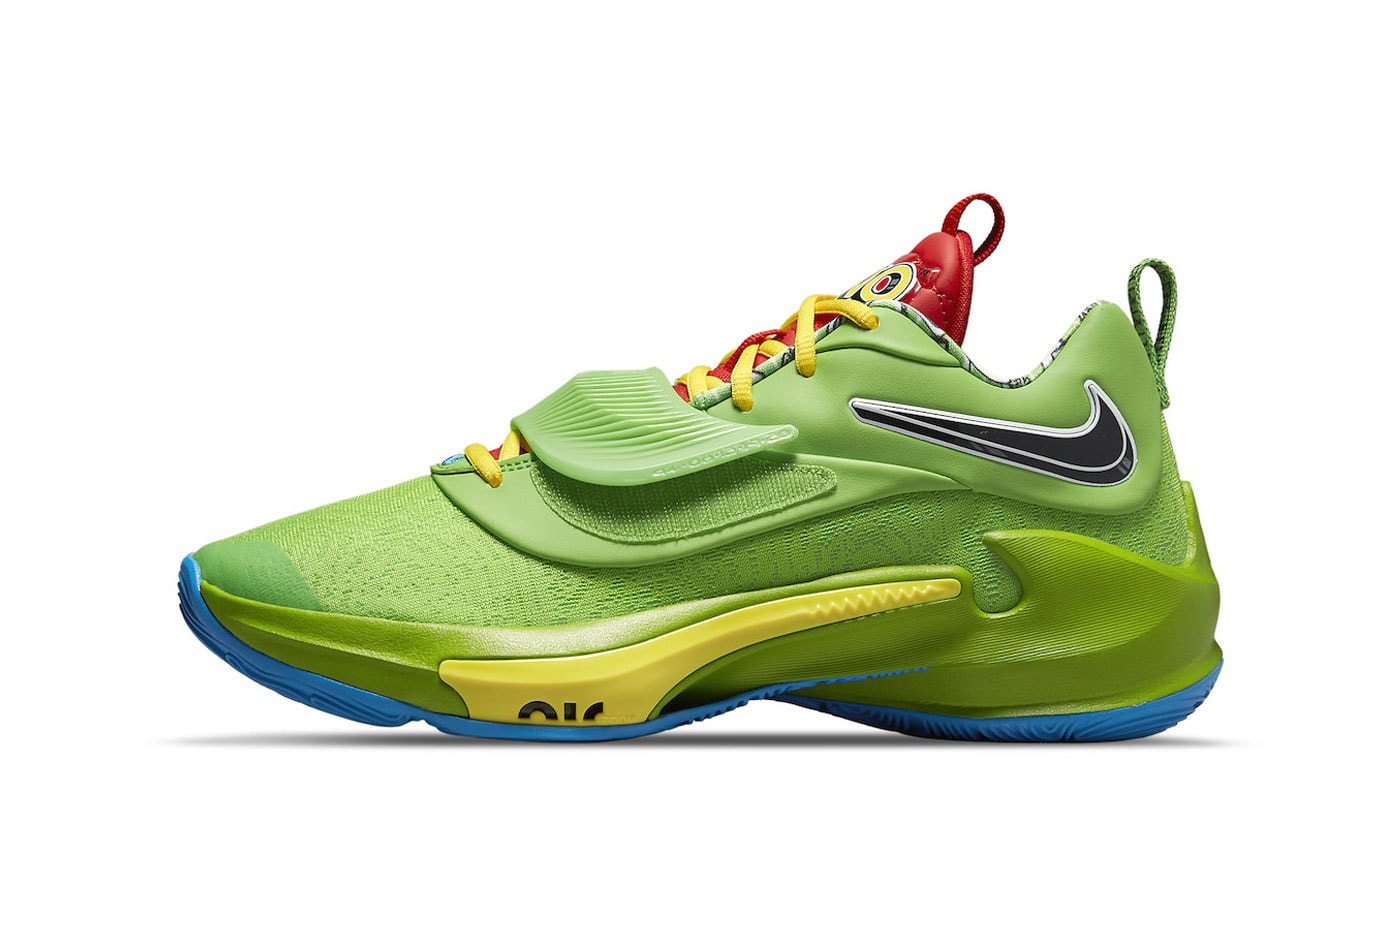 UNO x Nike Zoom Freak 3 Green Yellow DC9364-300 DC9364-700 Release 2022 Giannis Antetokounmpo